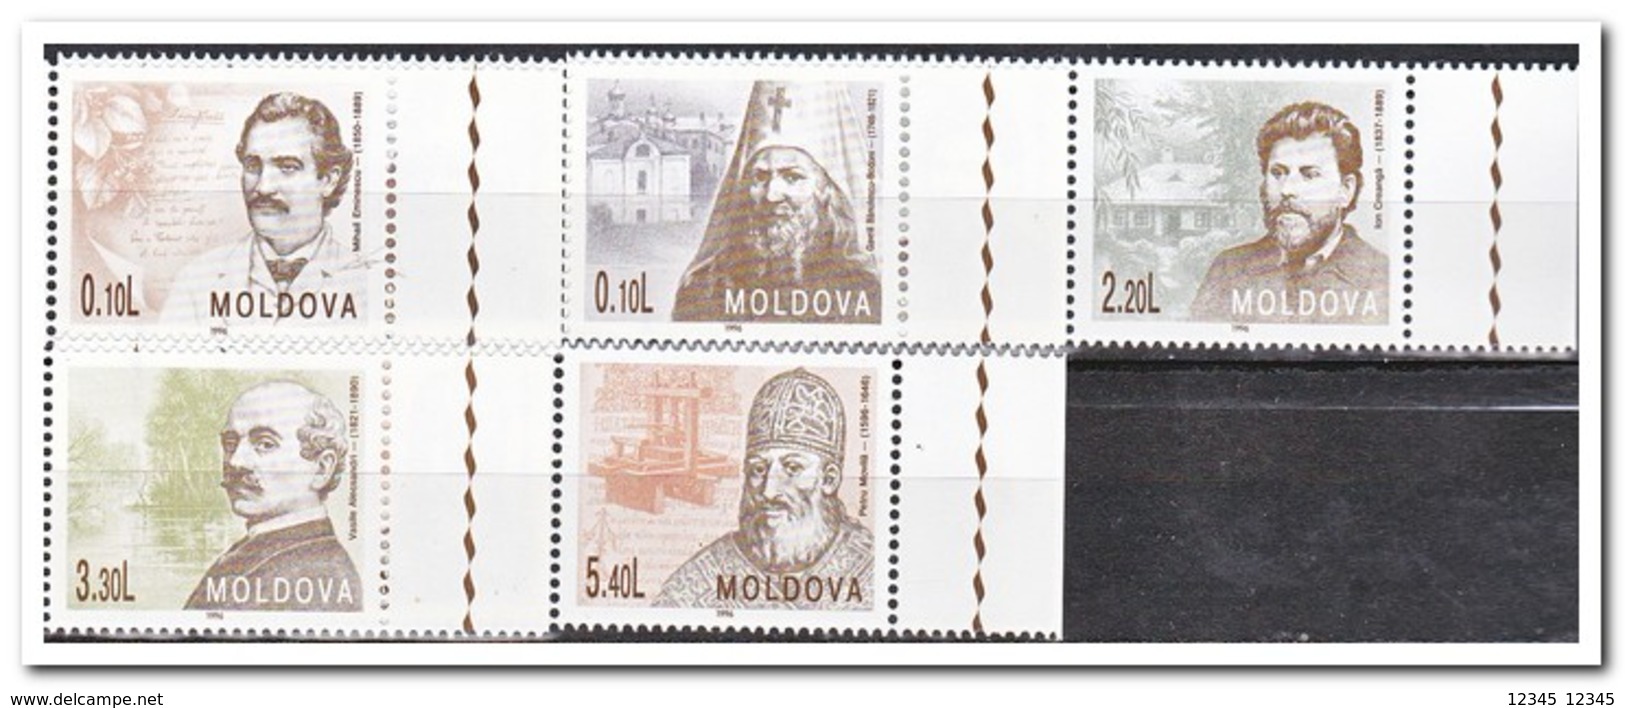 Moldavië 1996, Postfris MNH, Persons - Moldavië